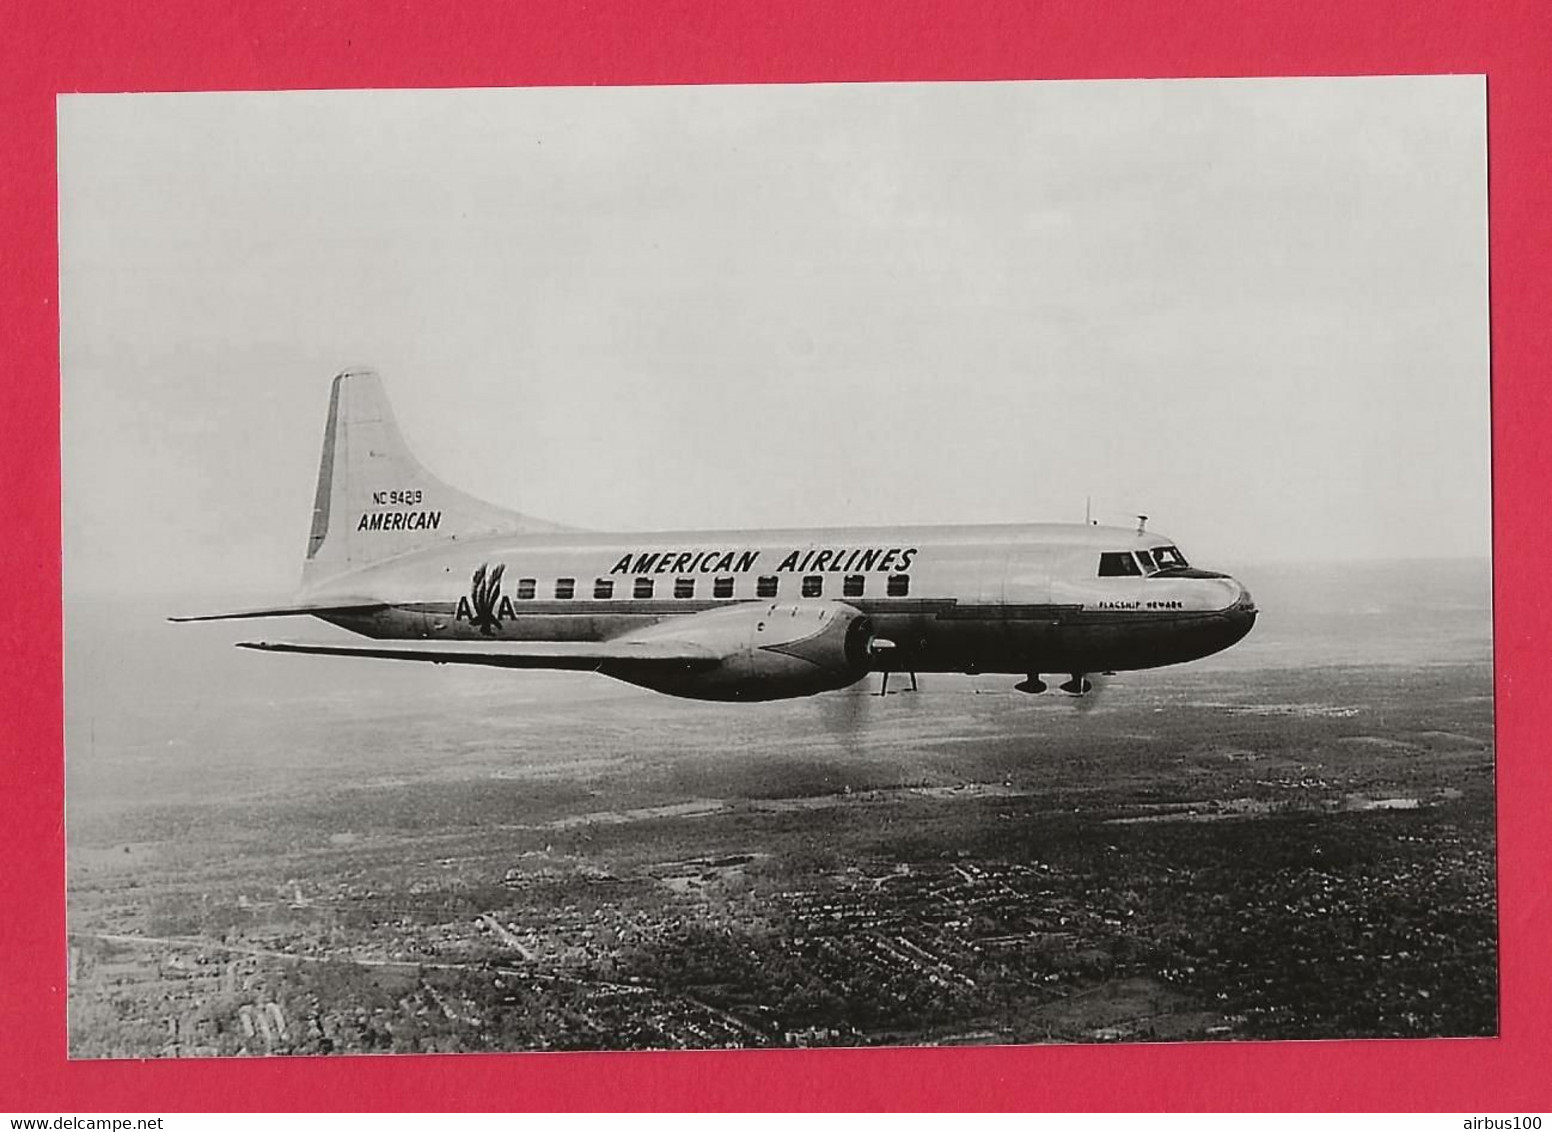 BELLE PHOTO REPRODUCTION AVION PLANE FLUGZEUG - DOUGLAS AMERICAN AIRLINES EN VOL - Aviation